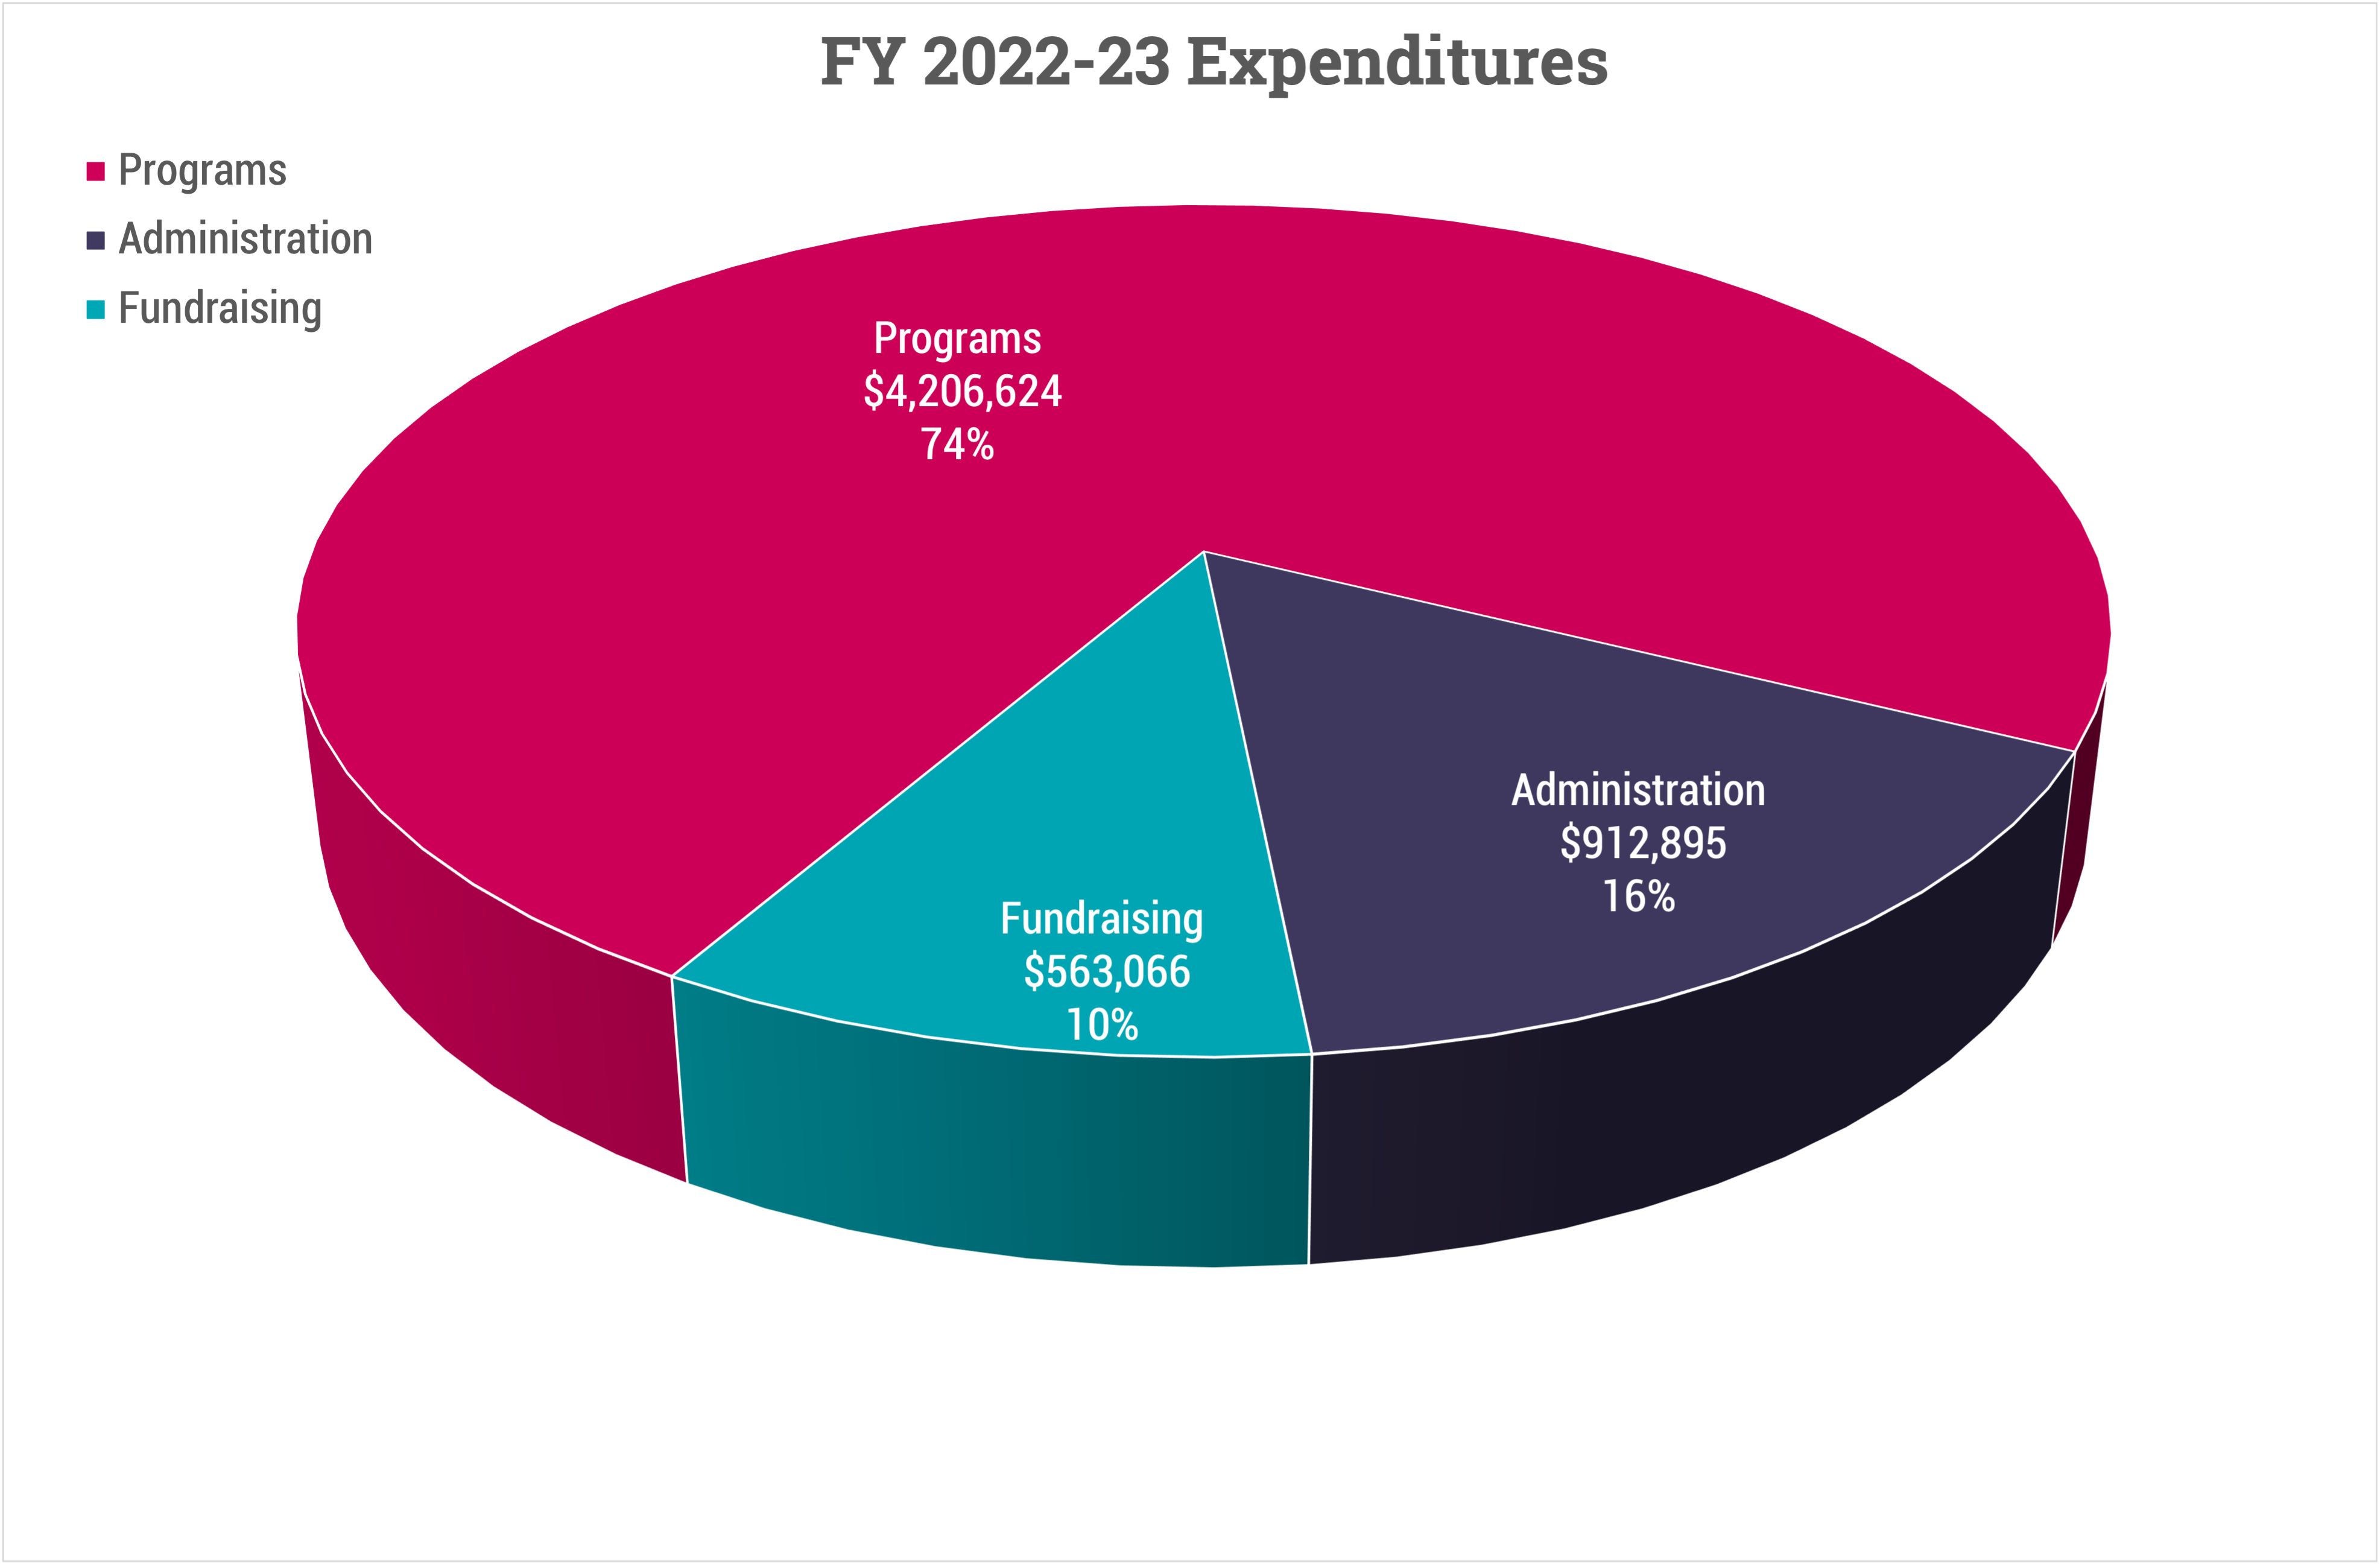 FY 2022-23 Expenditures piechart